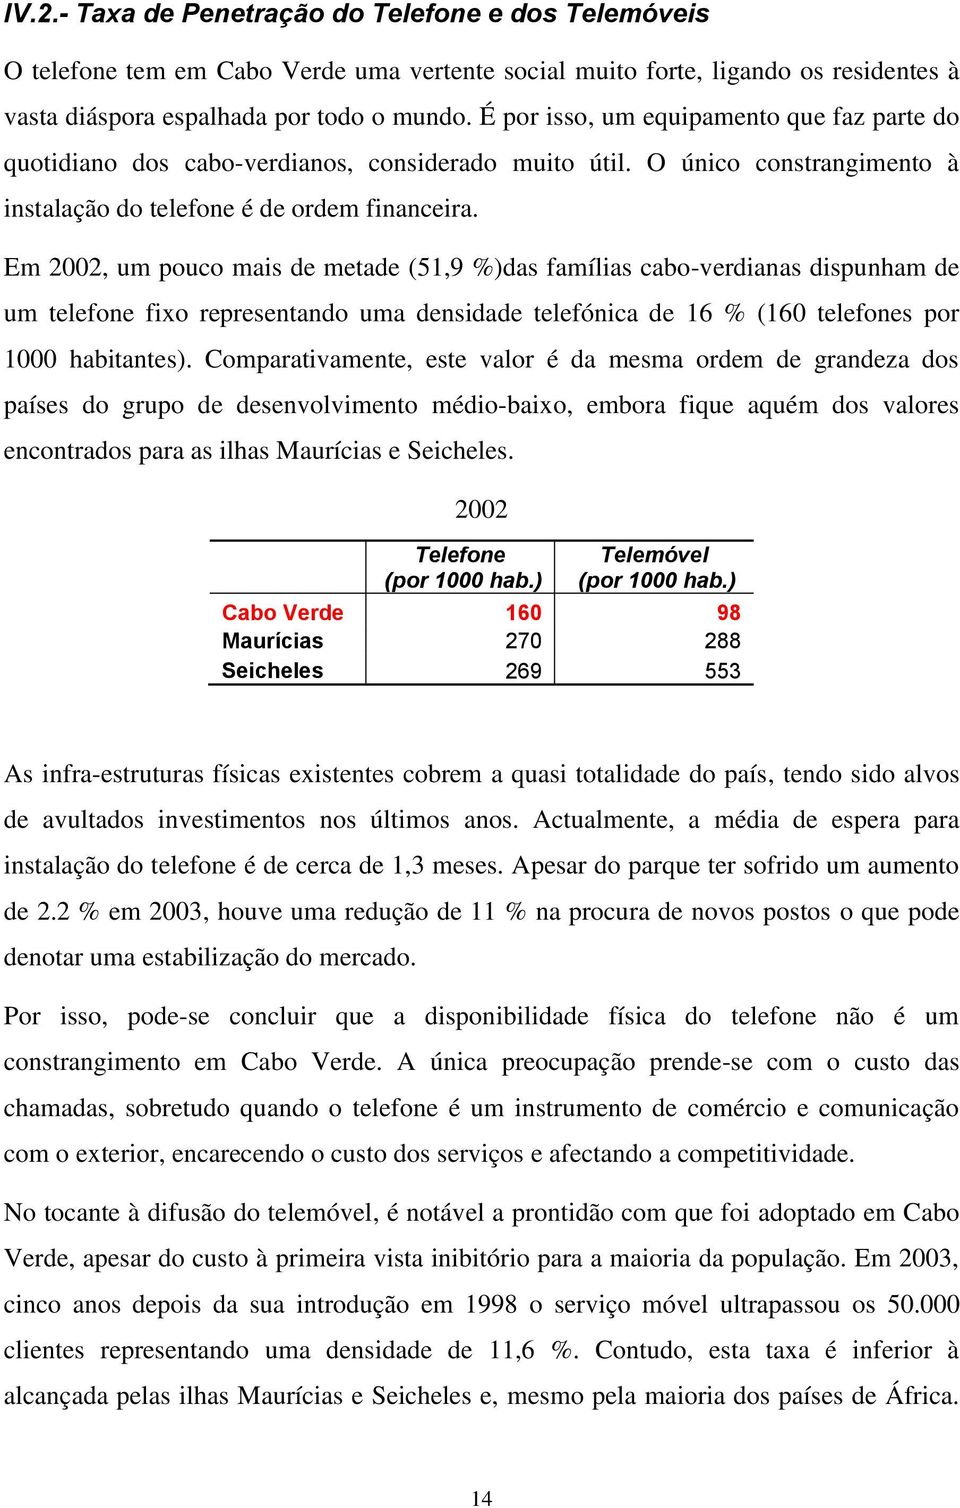 Em 2002, um pouco mais de metade (51,9 %)das famílias cabo-verdianas dispunham de um telefone fixo representando uma densidade telefónica de 16 % (160 telefones por 1000 habitantes).